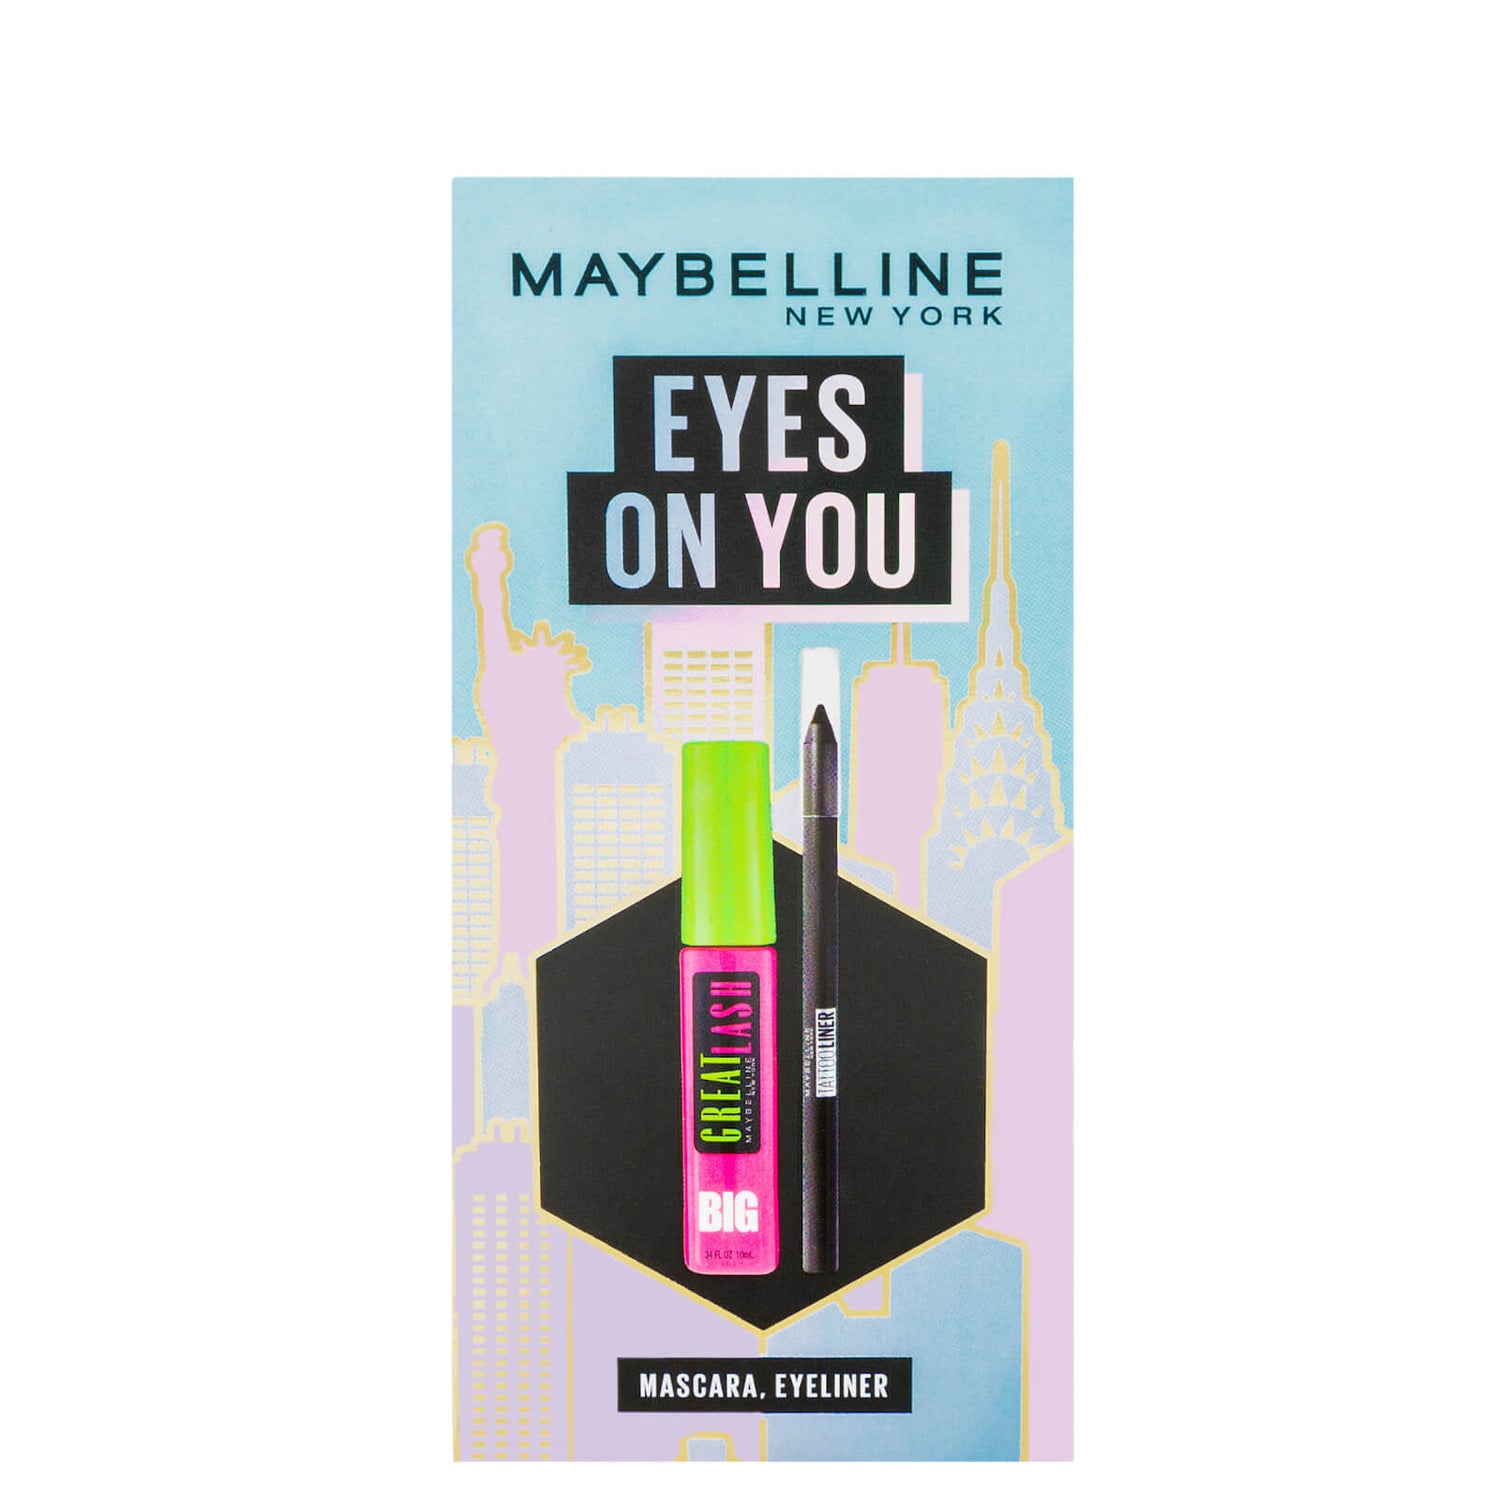 You, Maybelline Gift - on Lieferservice Eyes weltweit Kit Black Makeup & Mascara Eyeliner Christmas Gratis Set